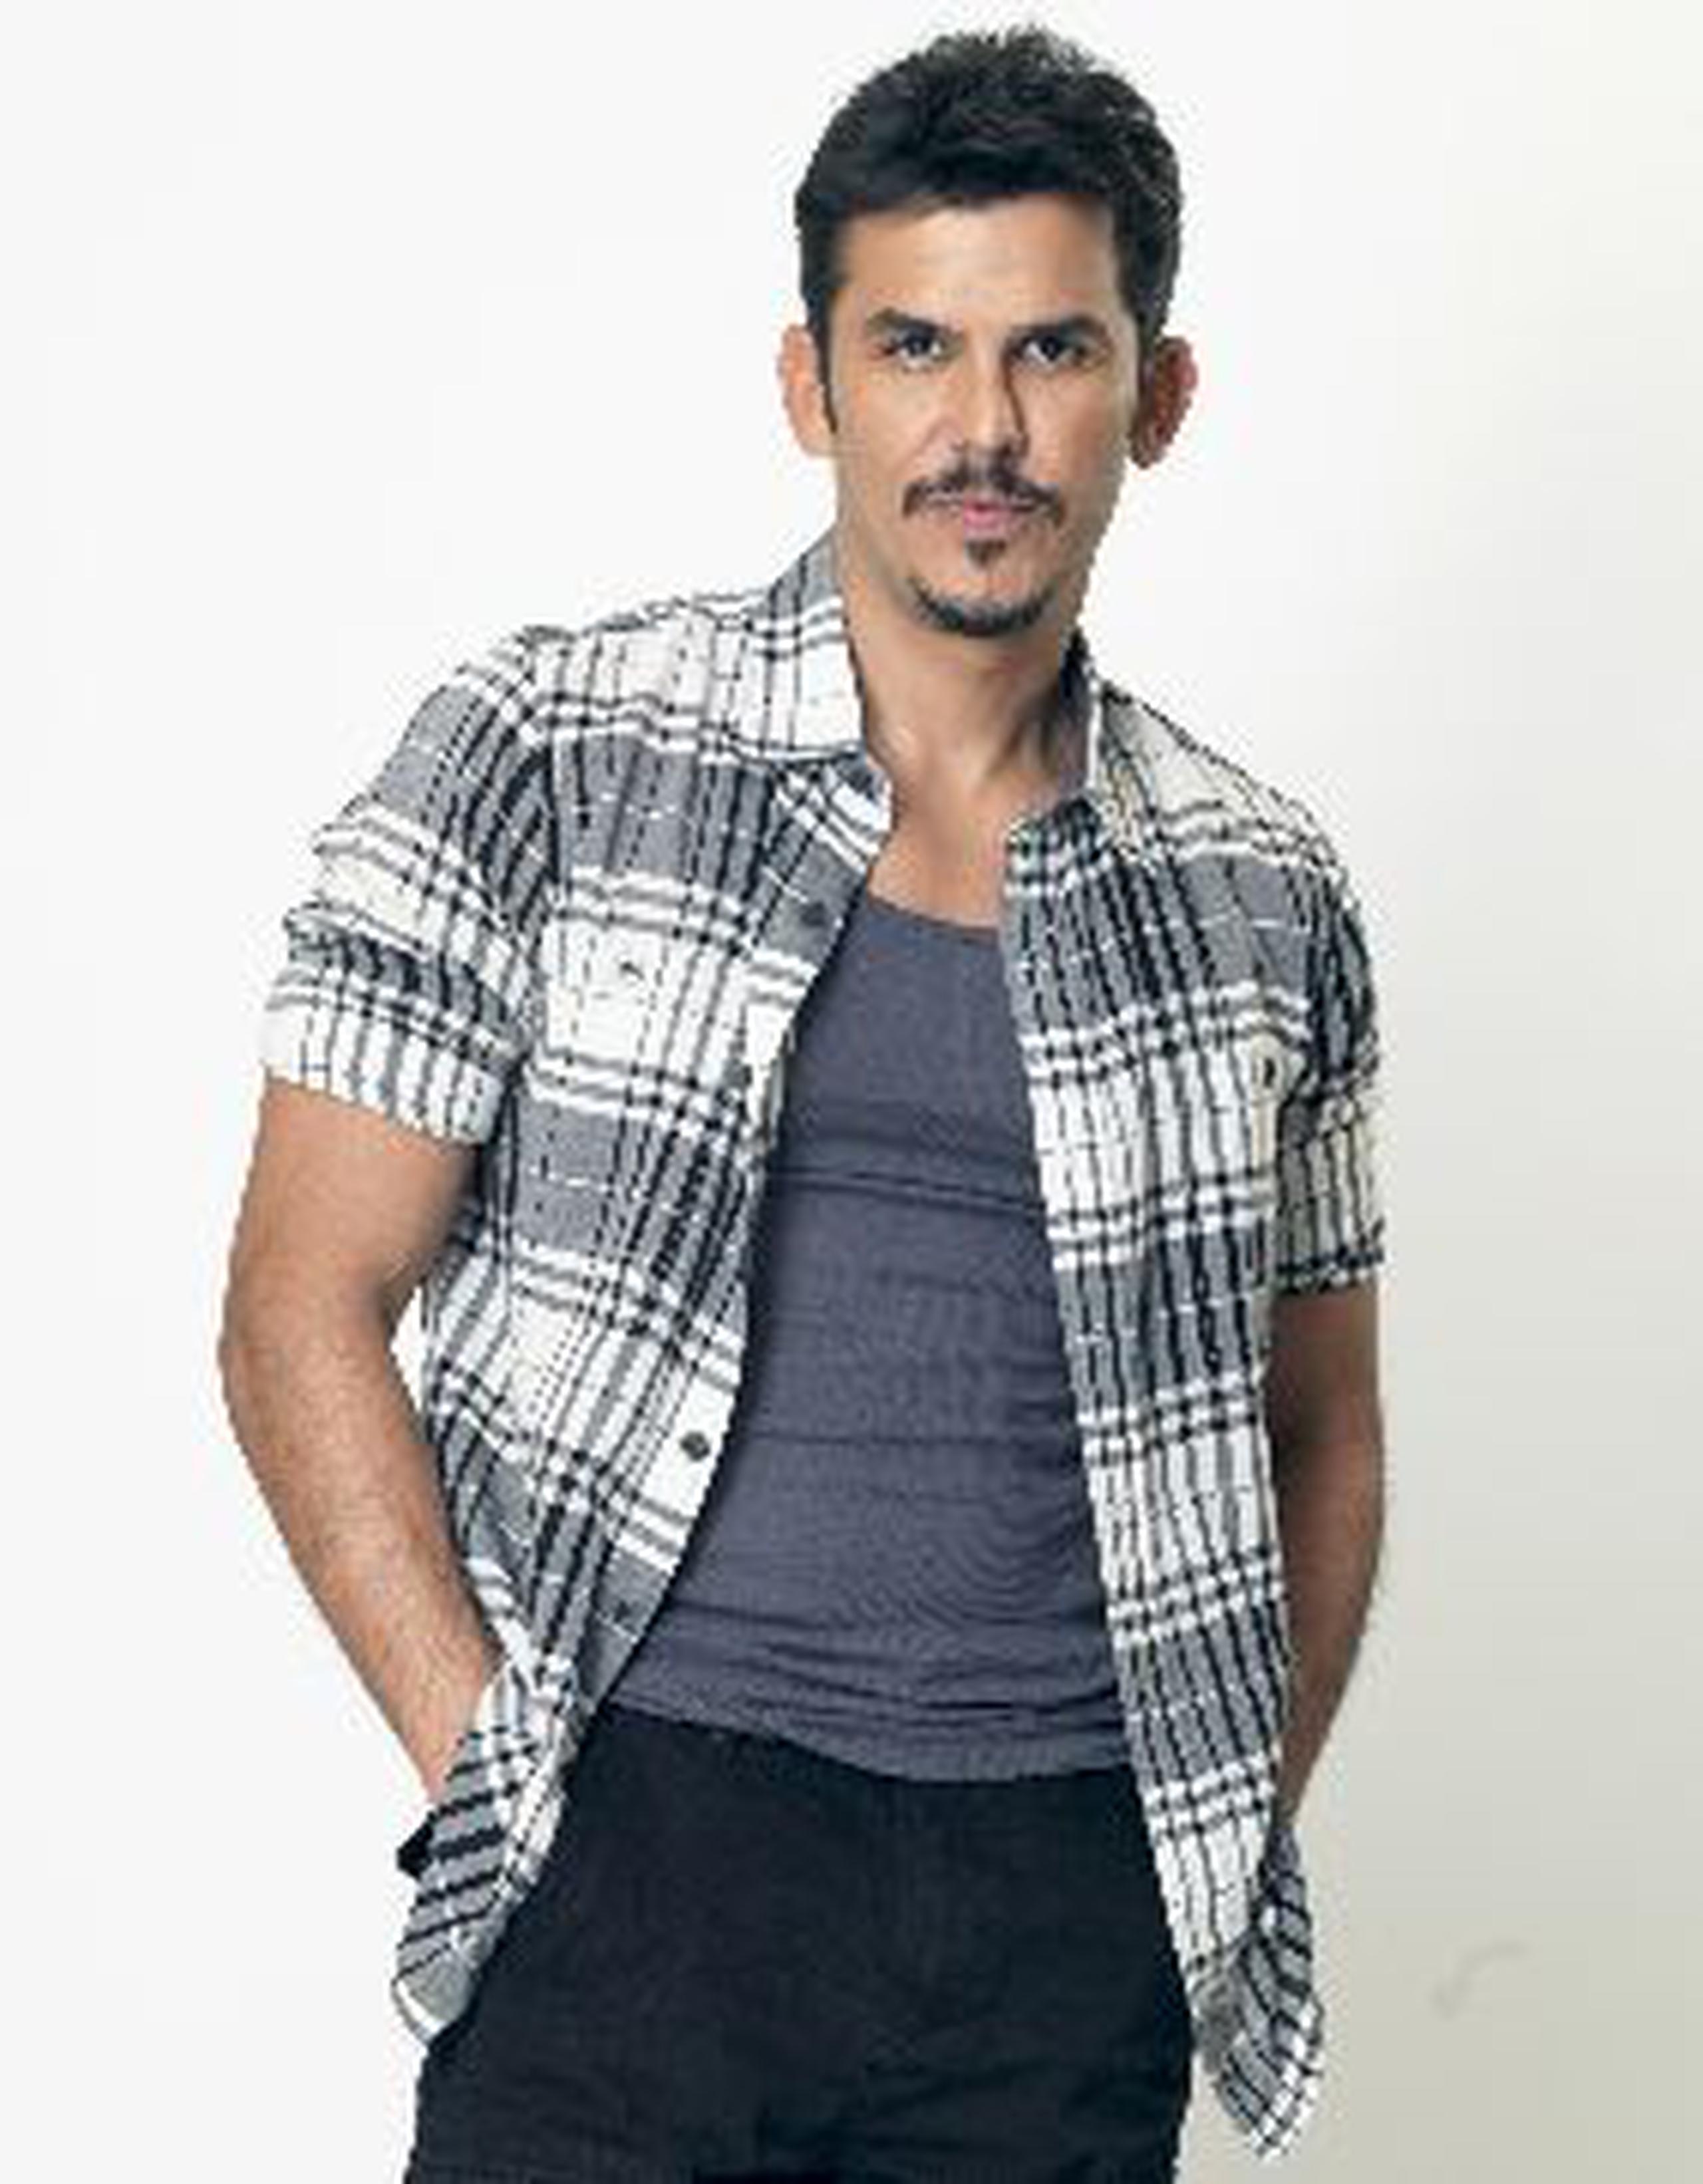 El actor boricua Néstor Rodulfo interpreta al ambicioso “Ramón Gómez” en la telenovela Rosa diamante, que se emite a las 8:00 de la noche por Telemundo.&nbsp;<font color="yellow">(Suministrada)</font>